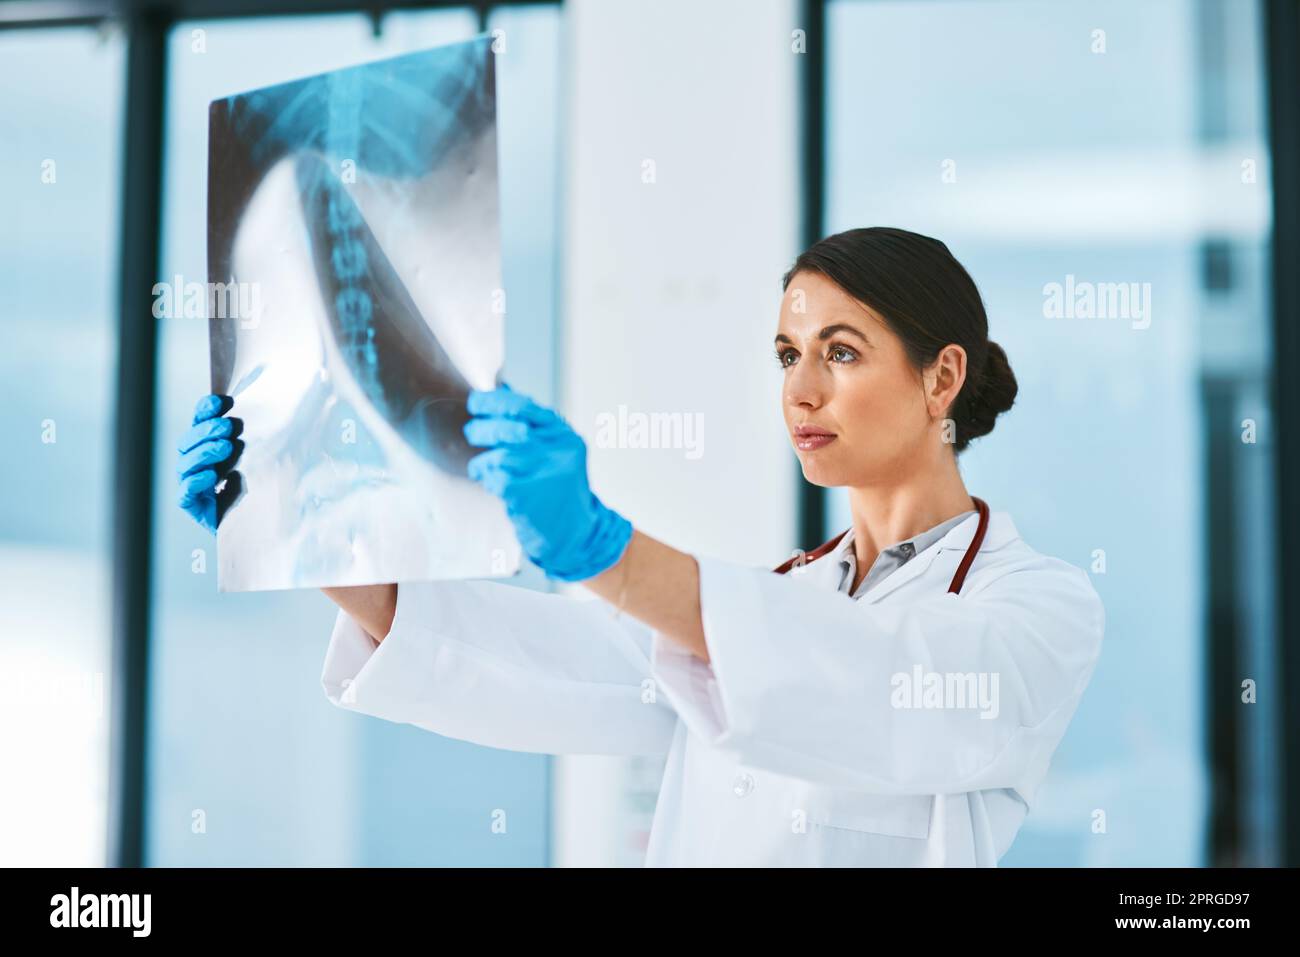 Examen des dernières acquisitions. Un médecin analysant une radiographie dans un hôpital. Banque D'Images